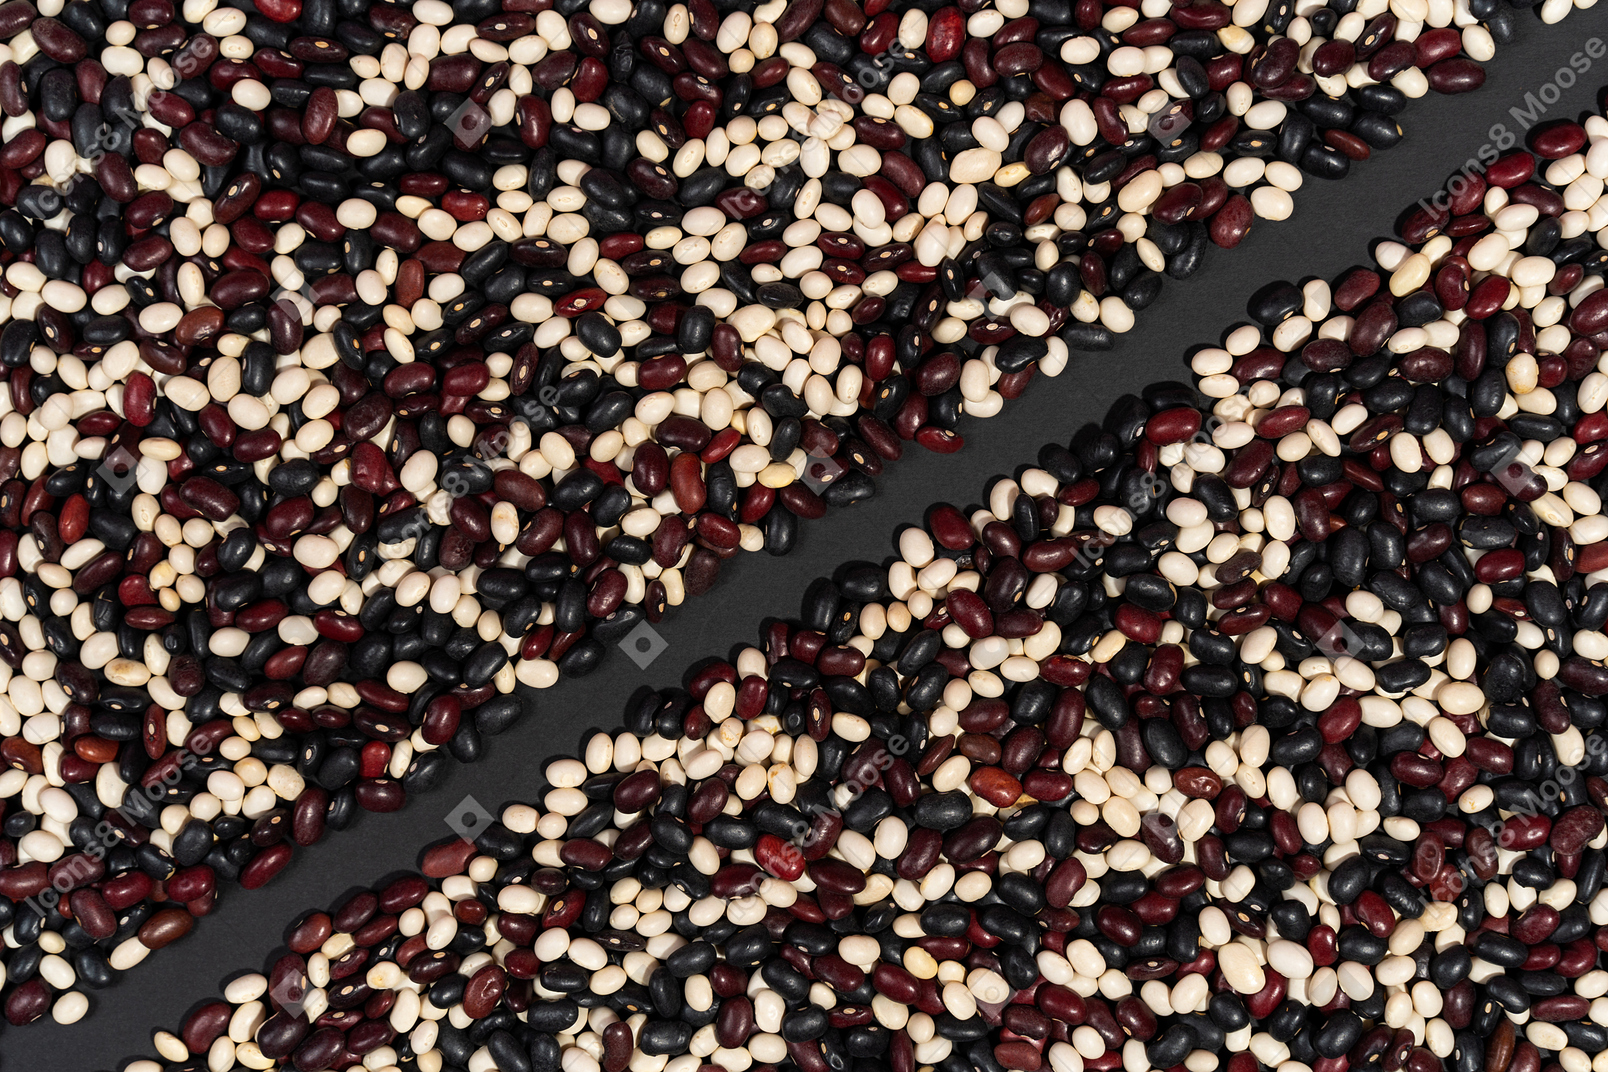 Black line between scatterings of beans